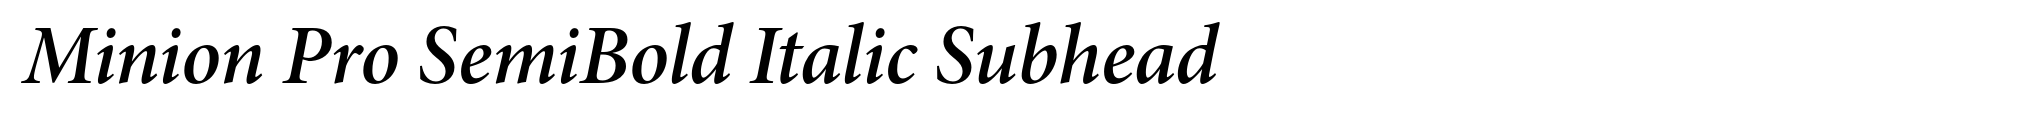 Minion Pro SemiBold Italic Subhead image